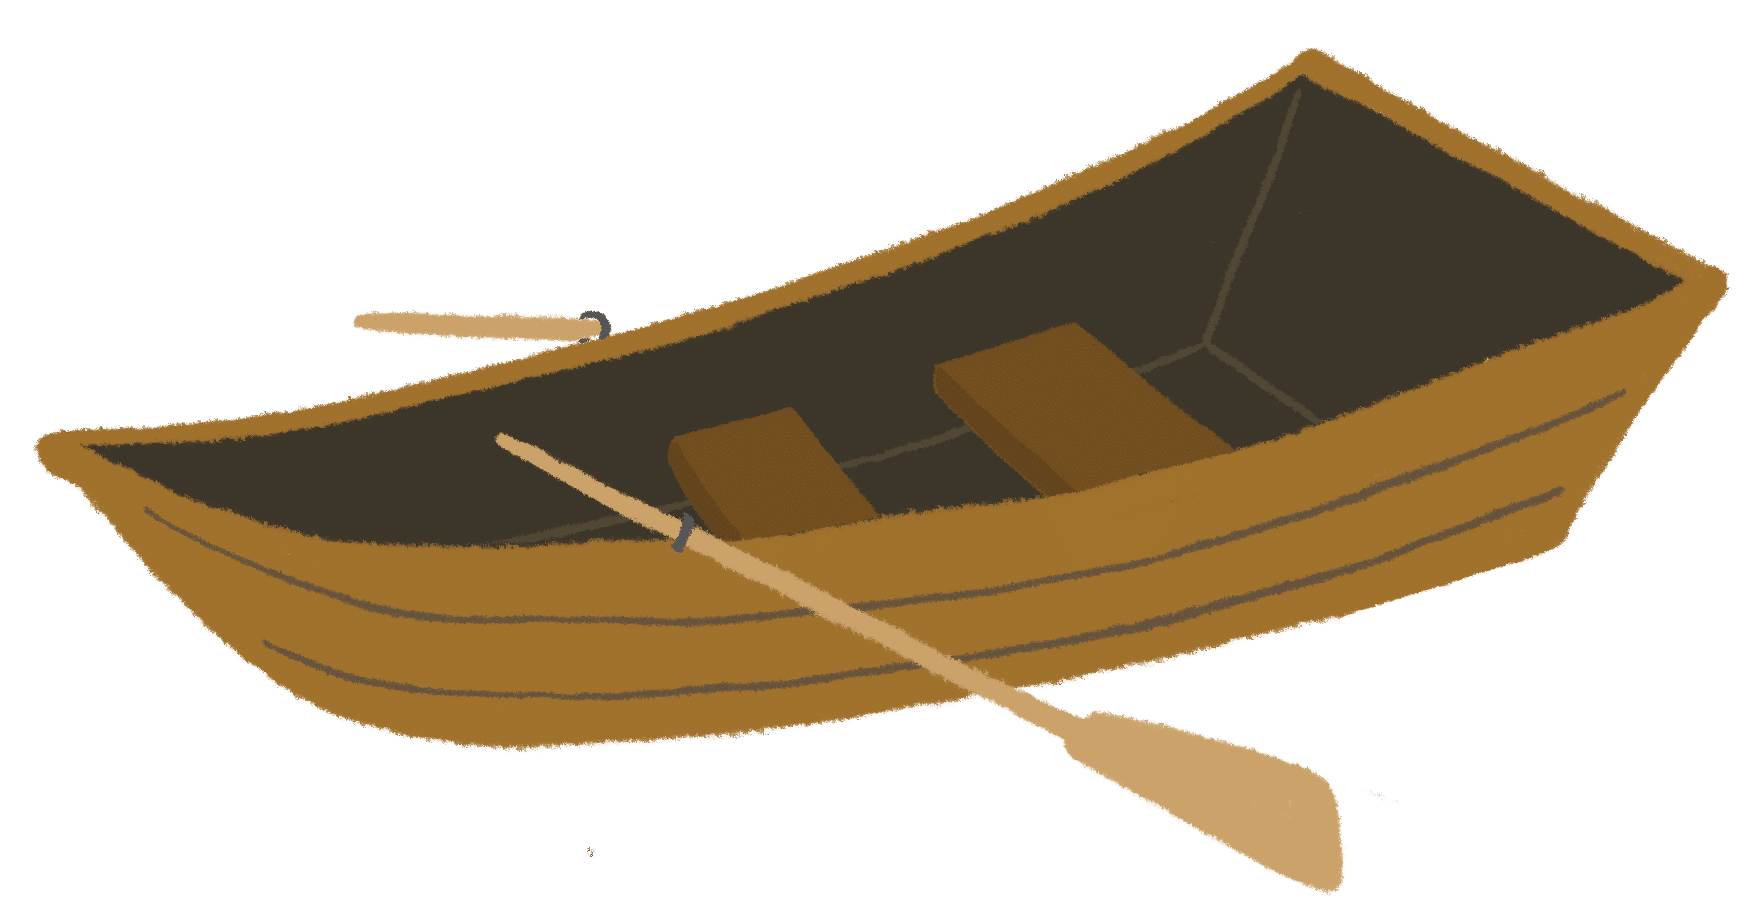 小舟のイラスト ペタアート 聖書のかわいいフリーイラスト素材 キリスト教福音宣教会